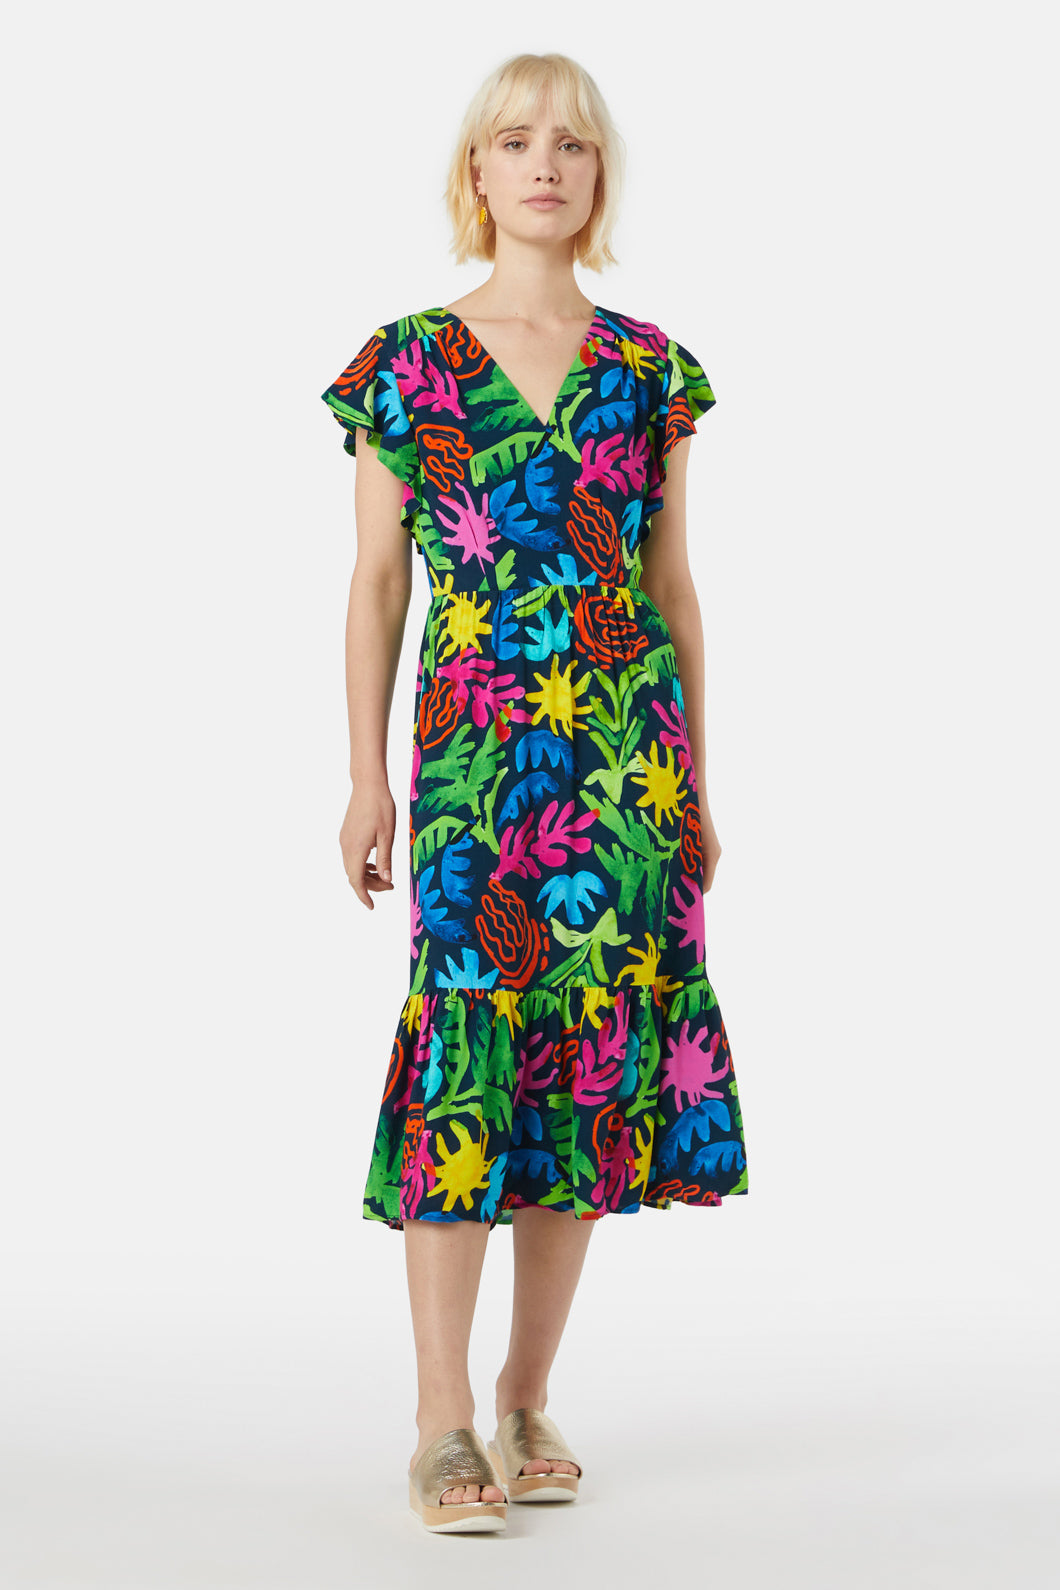 DOLCE & GABBANA Floral-Print Bustier Mini Dress 52 IT/16 US